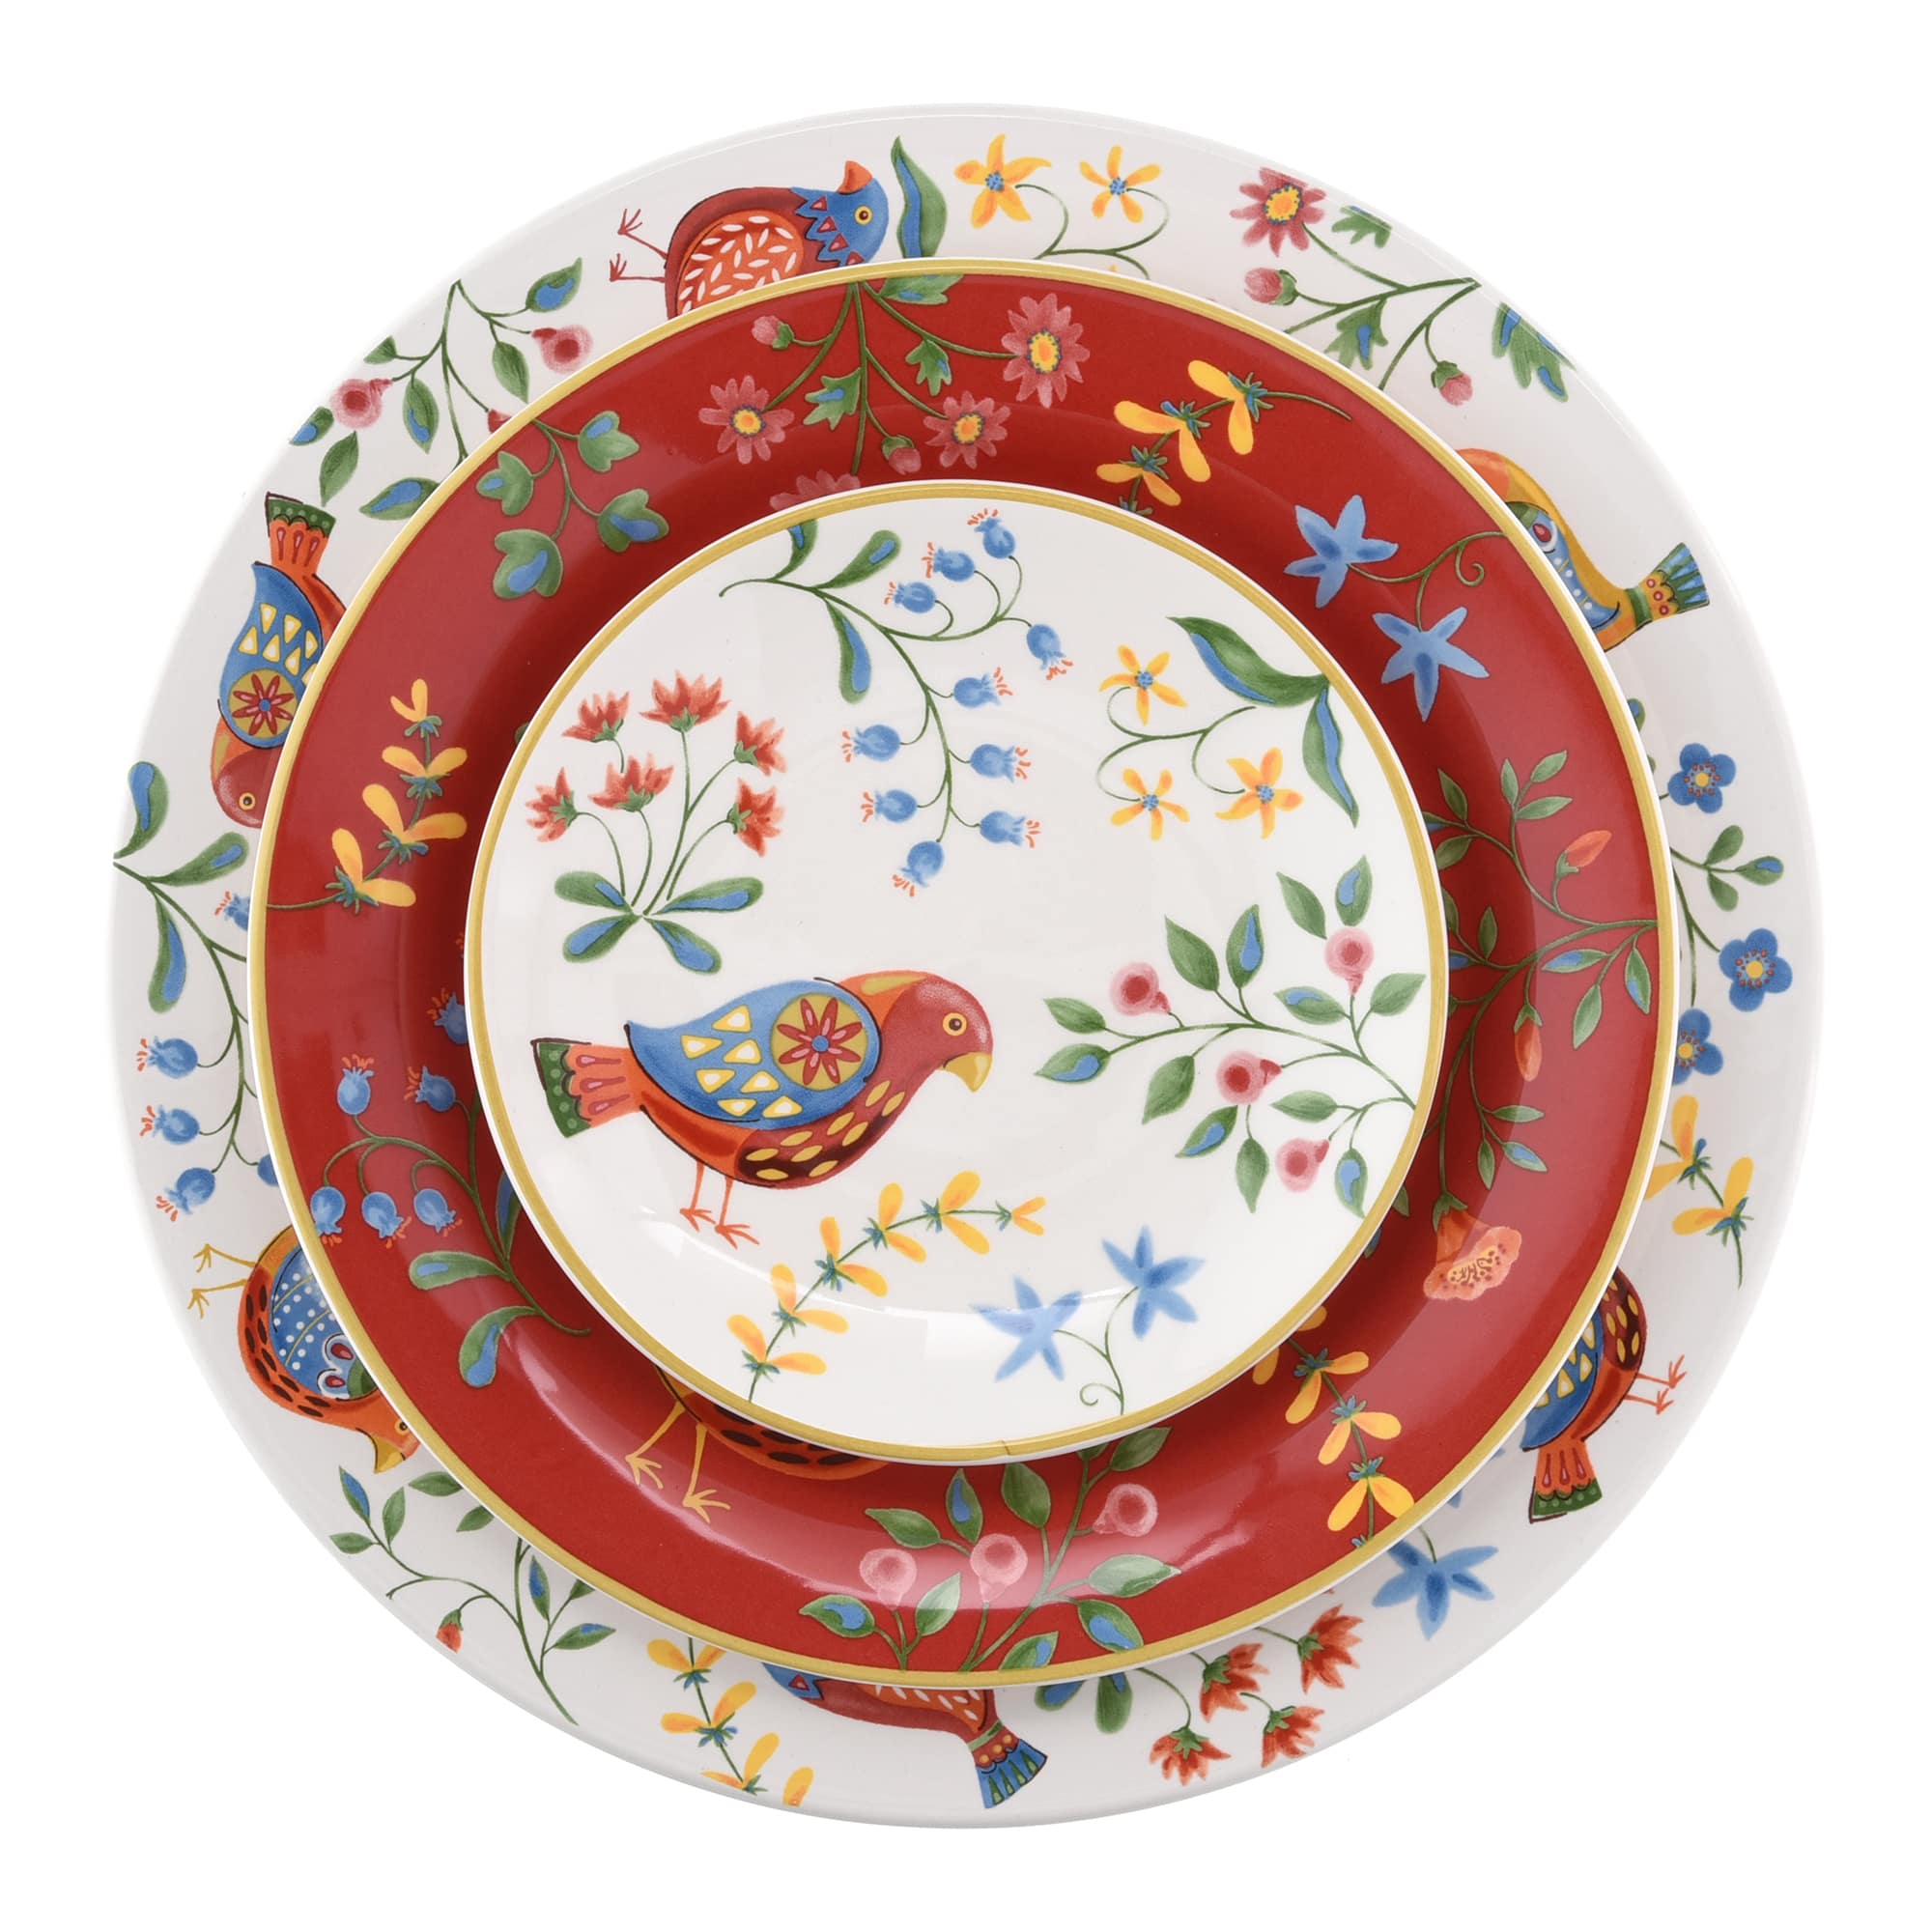 6-Inch Folk Art Inspired Ceramic Dessert Plate